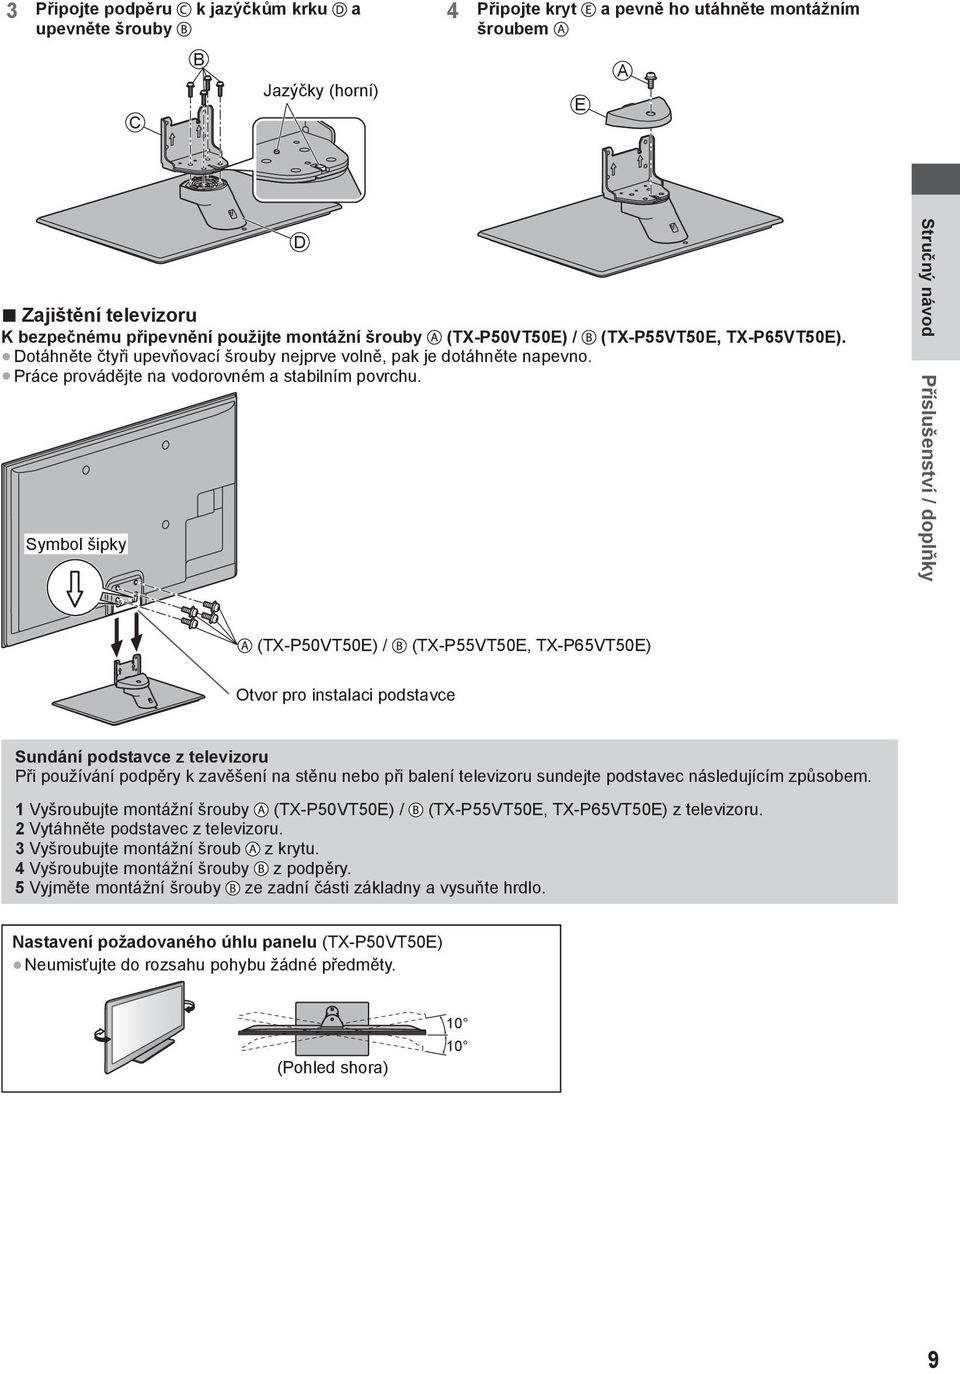 Symbol šipky Stručný návod Příslušenství / doplňky (TX-P50VT50E) / (TX-P55VT50E, TX-P65VT50E) Otvor pro instalaci podstavce Sundání podstavce z televizoru Při používání podpěry k zavěšení na stěnu